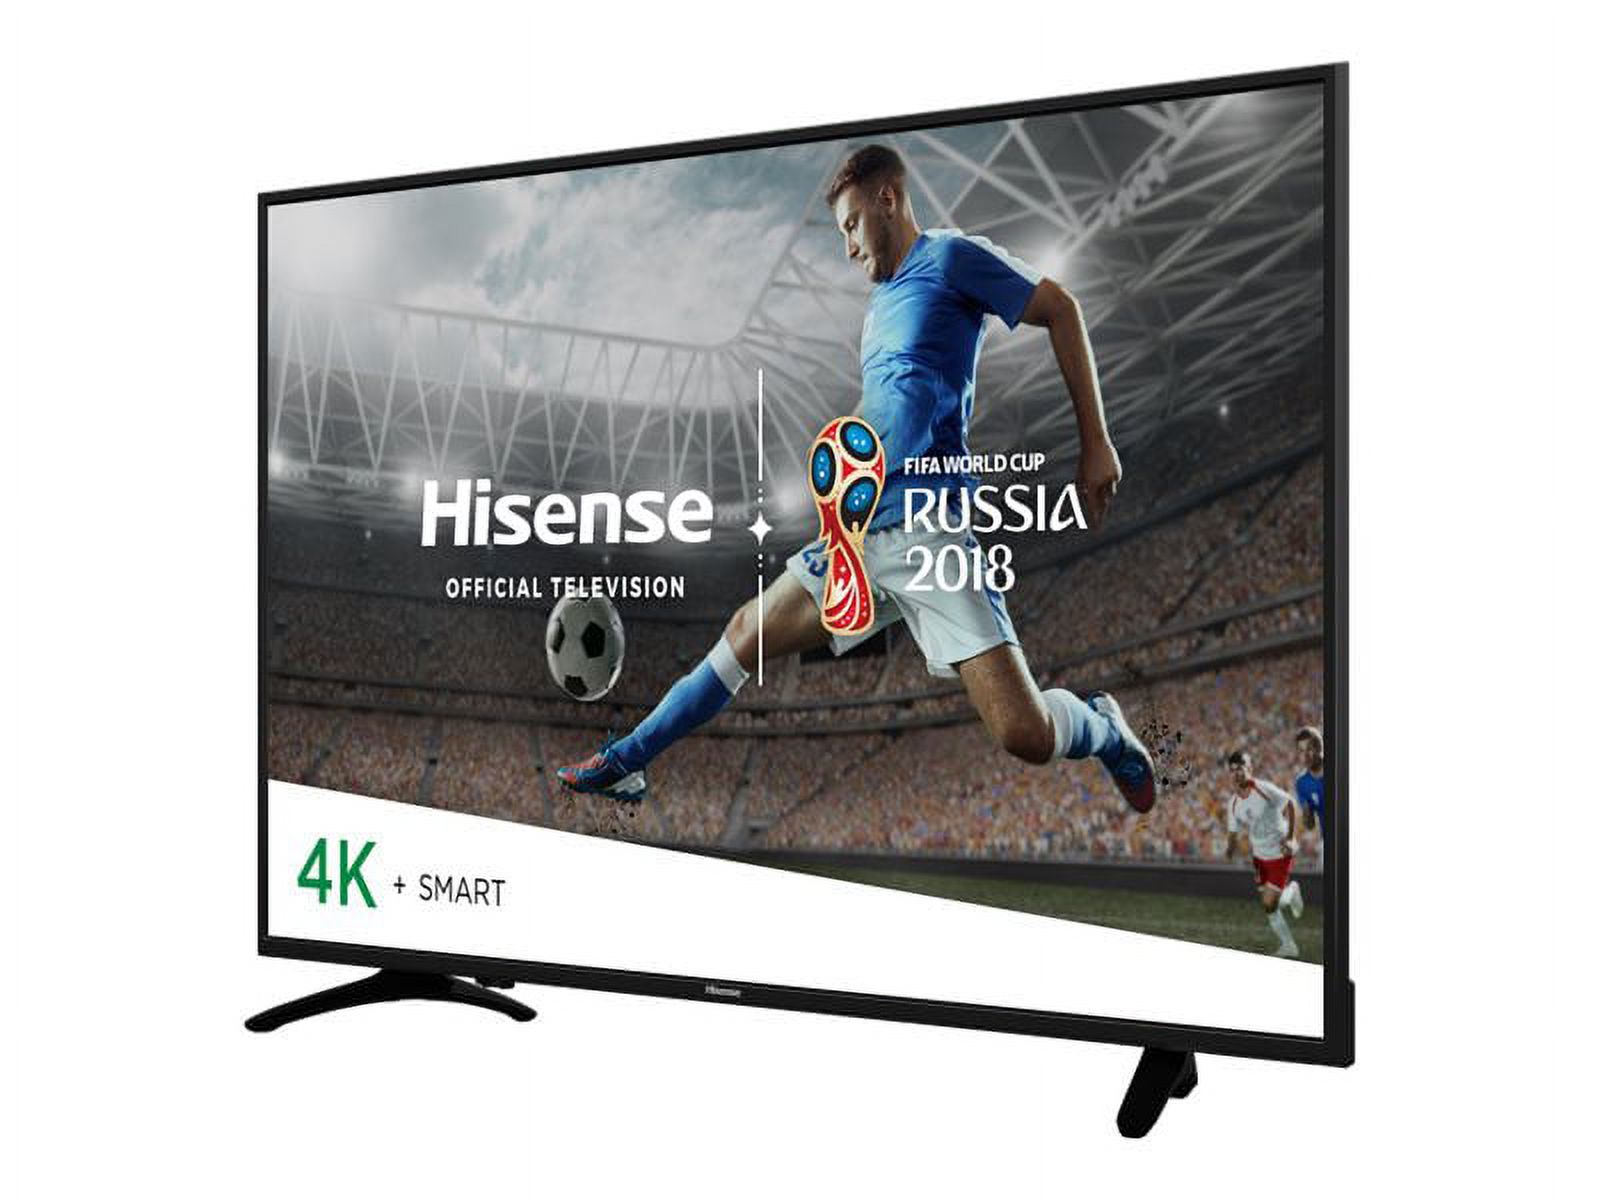 Hisense 55H8E - 55" Diagonal Class (54.6" viewable) - H8 Series LED-backlit LCD TV - Smart TV - 4K UHD (2160p) 3840 x 2160 - HDR - direct-lit LED - image 1 of 8